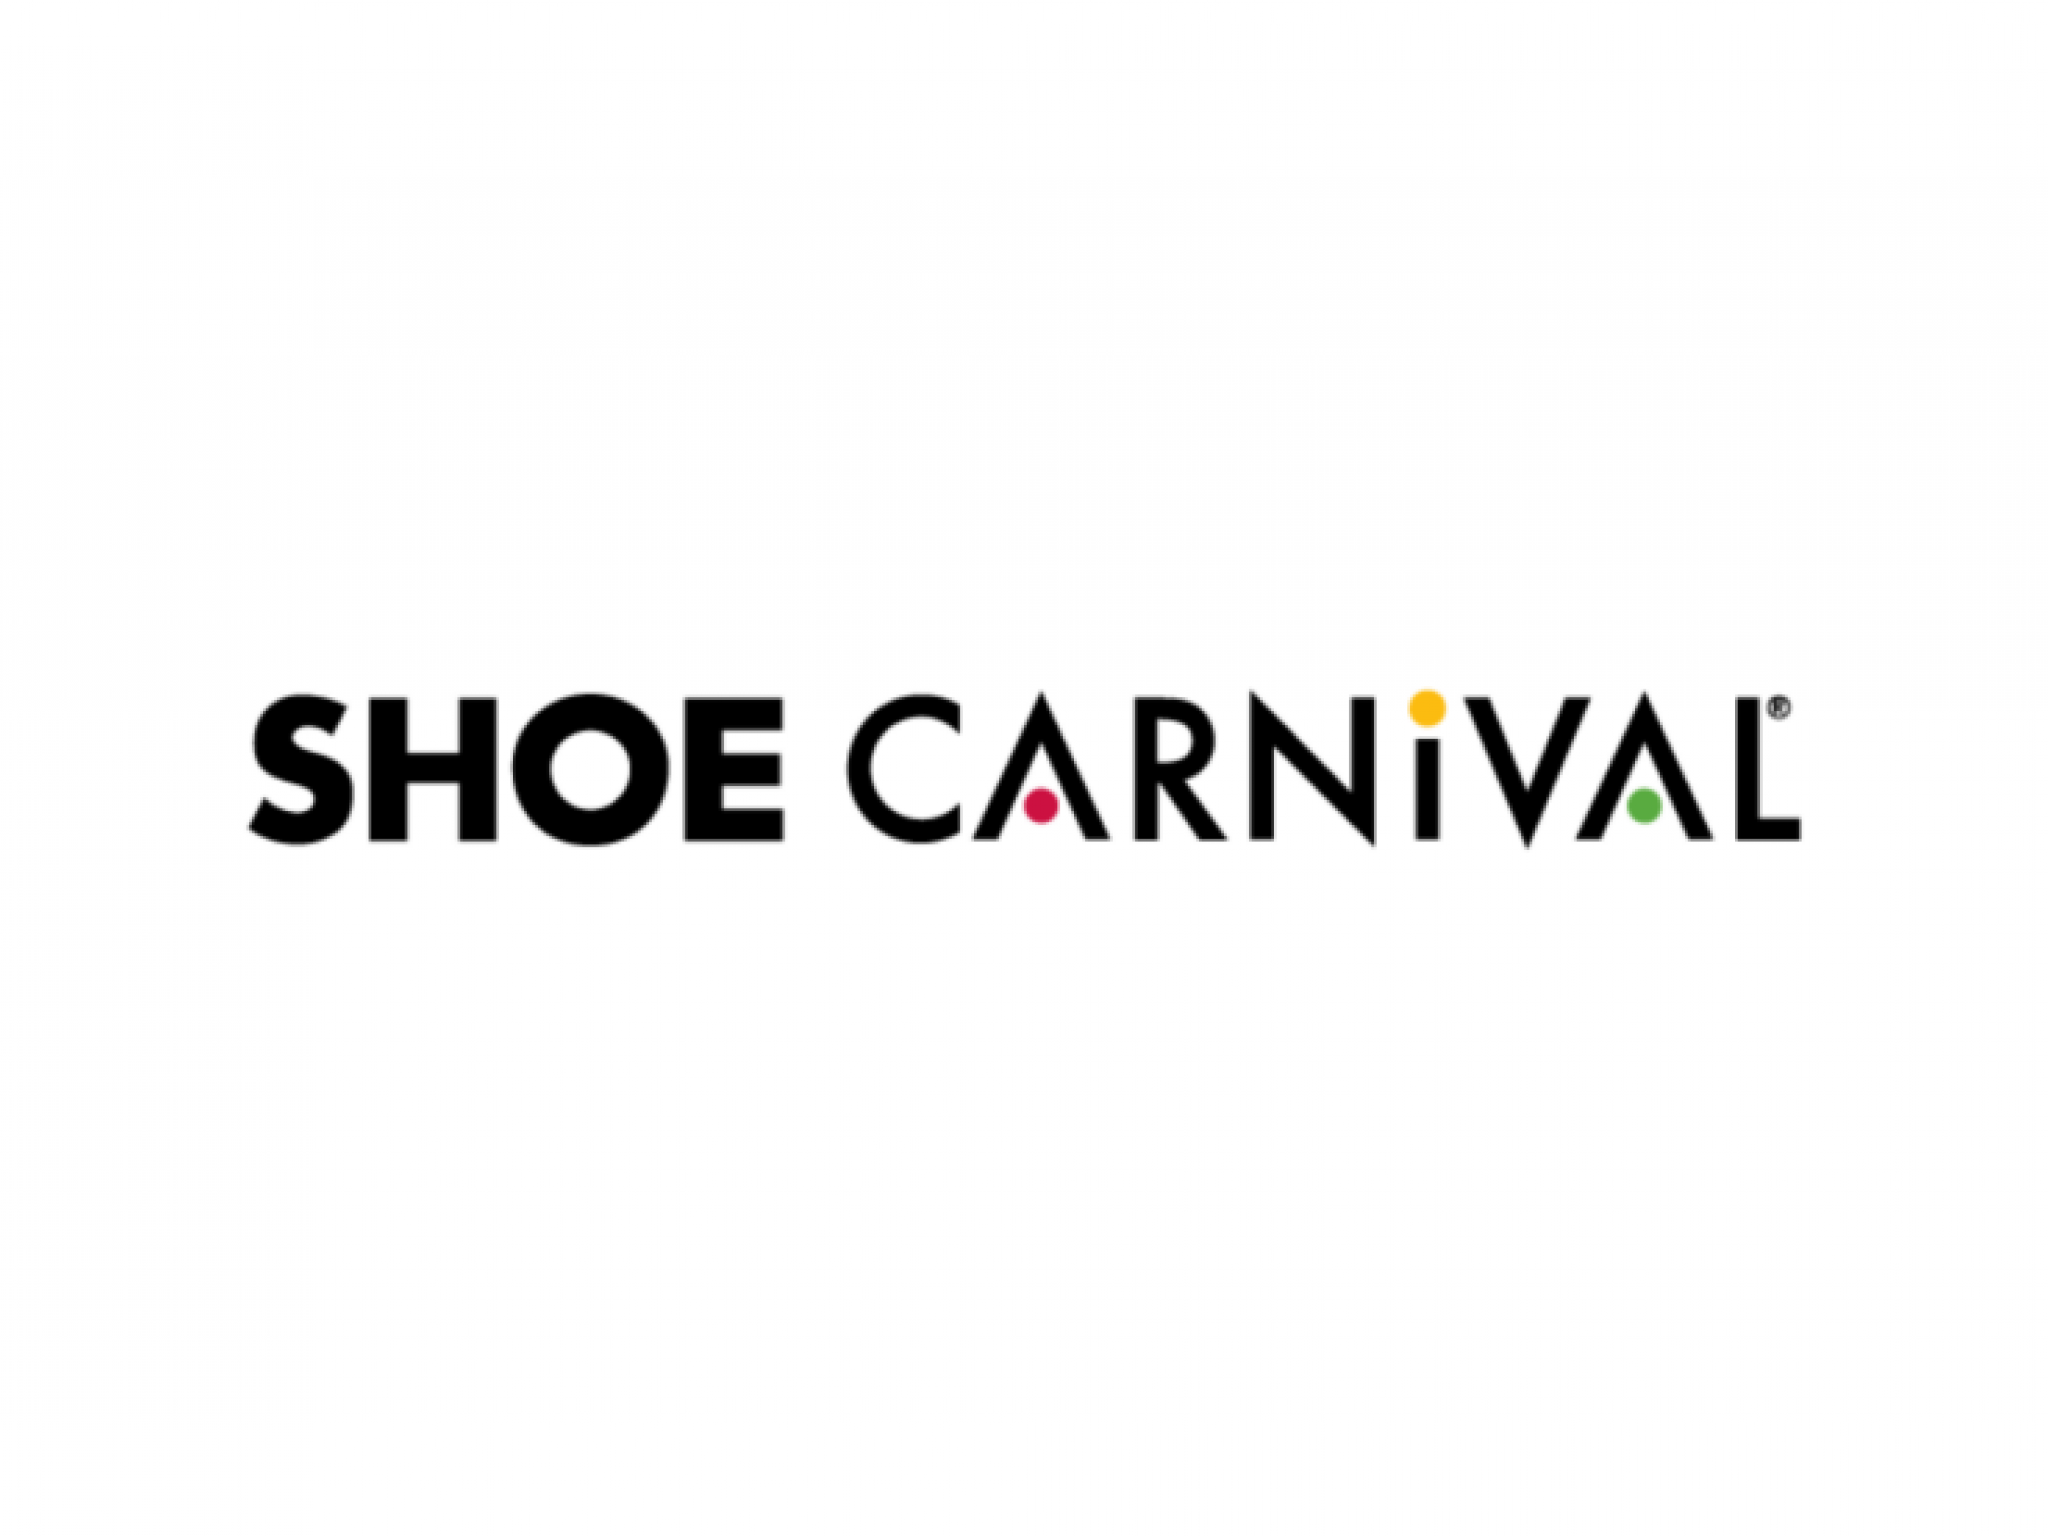  shoe-carnival-q4-revenue-misses-by-a-whisker-margin-shrinks 